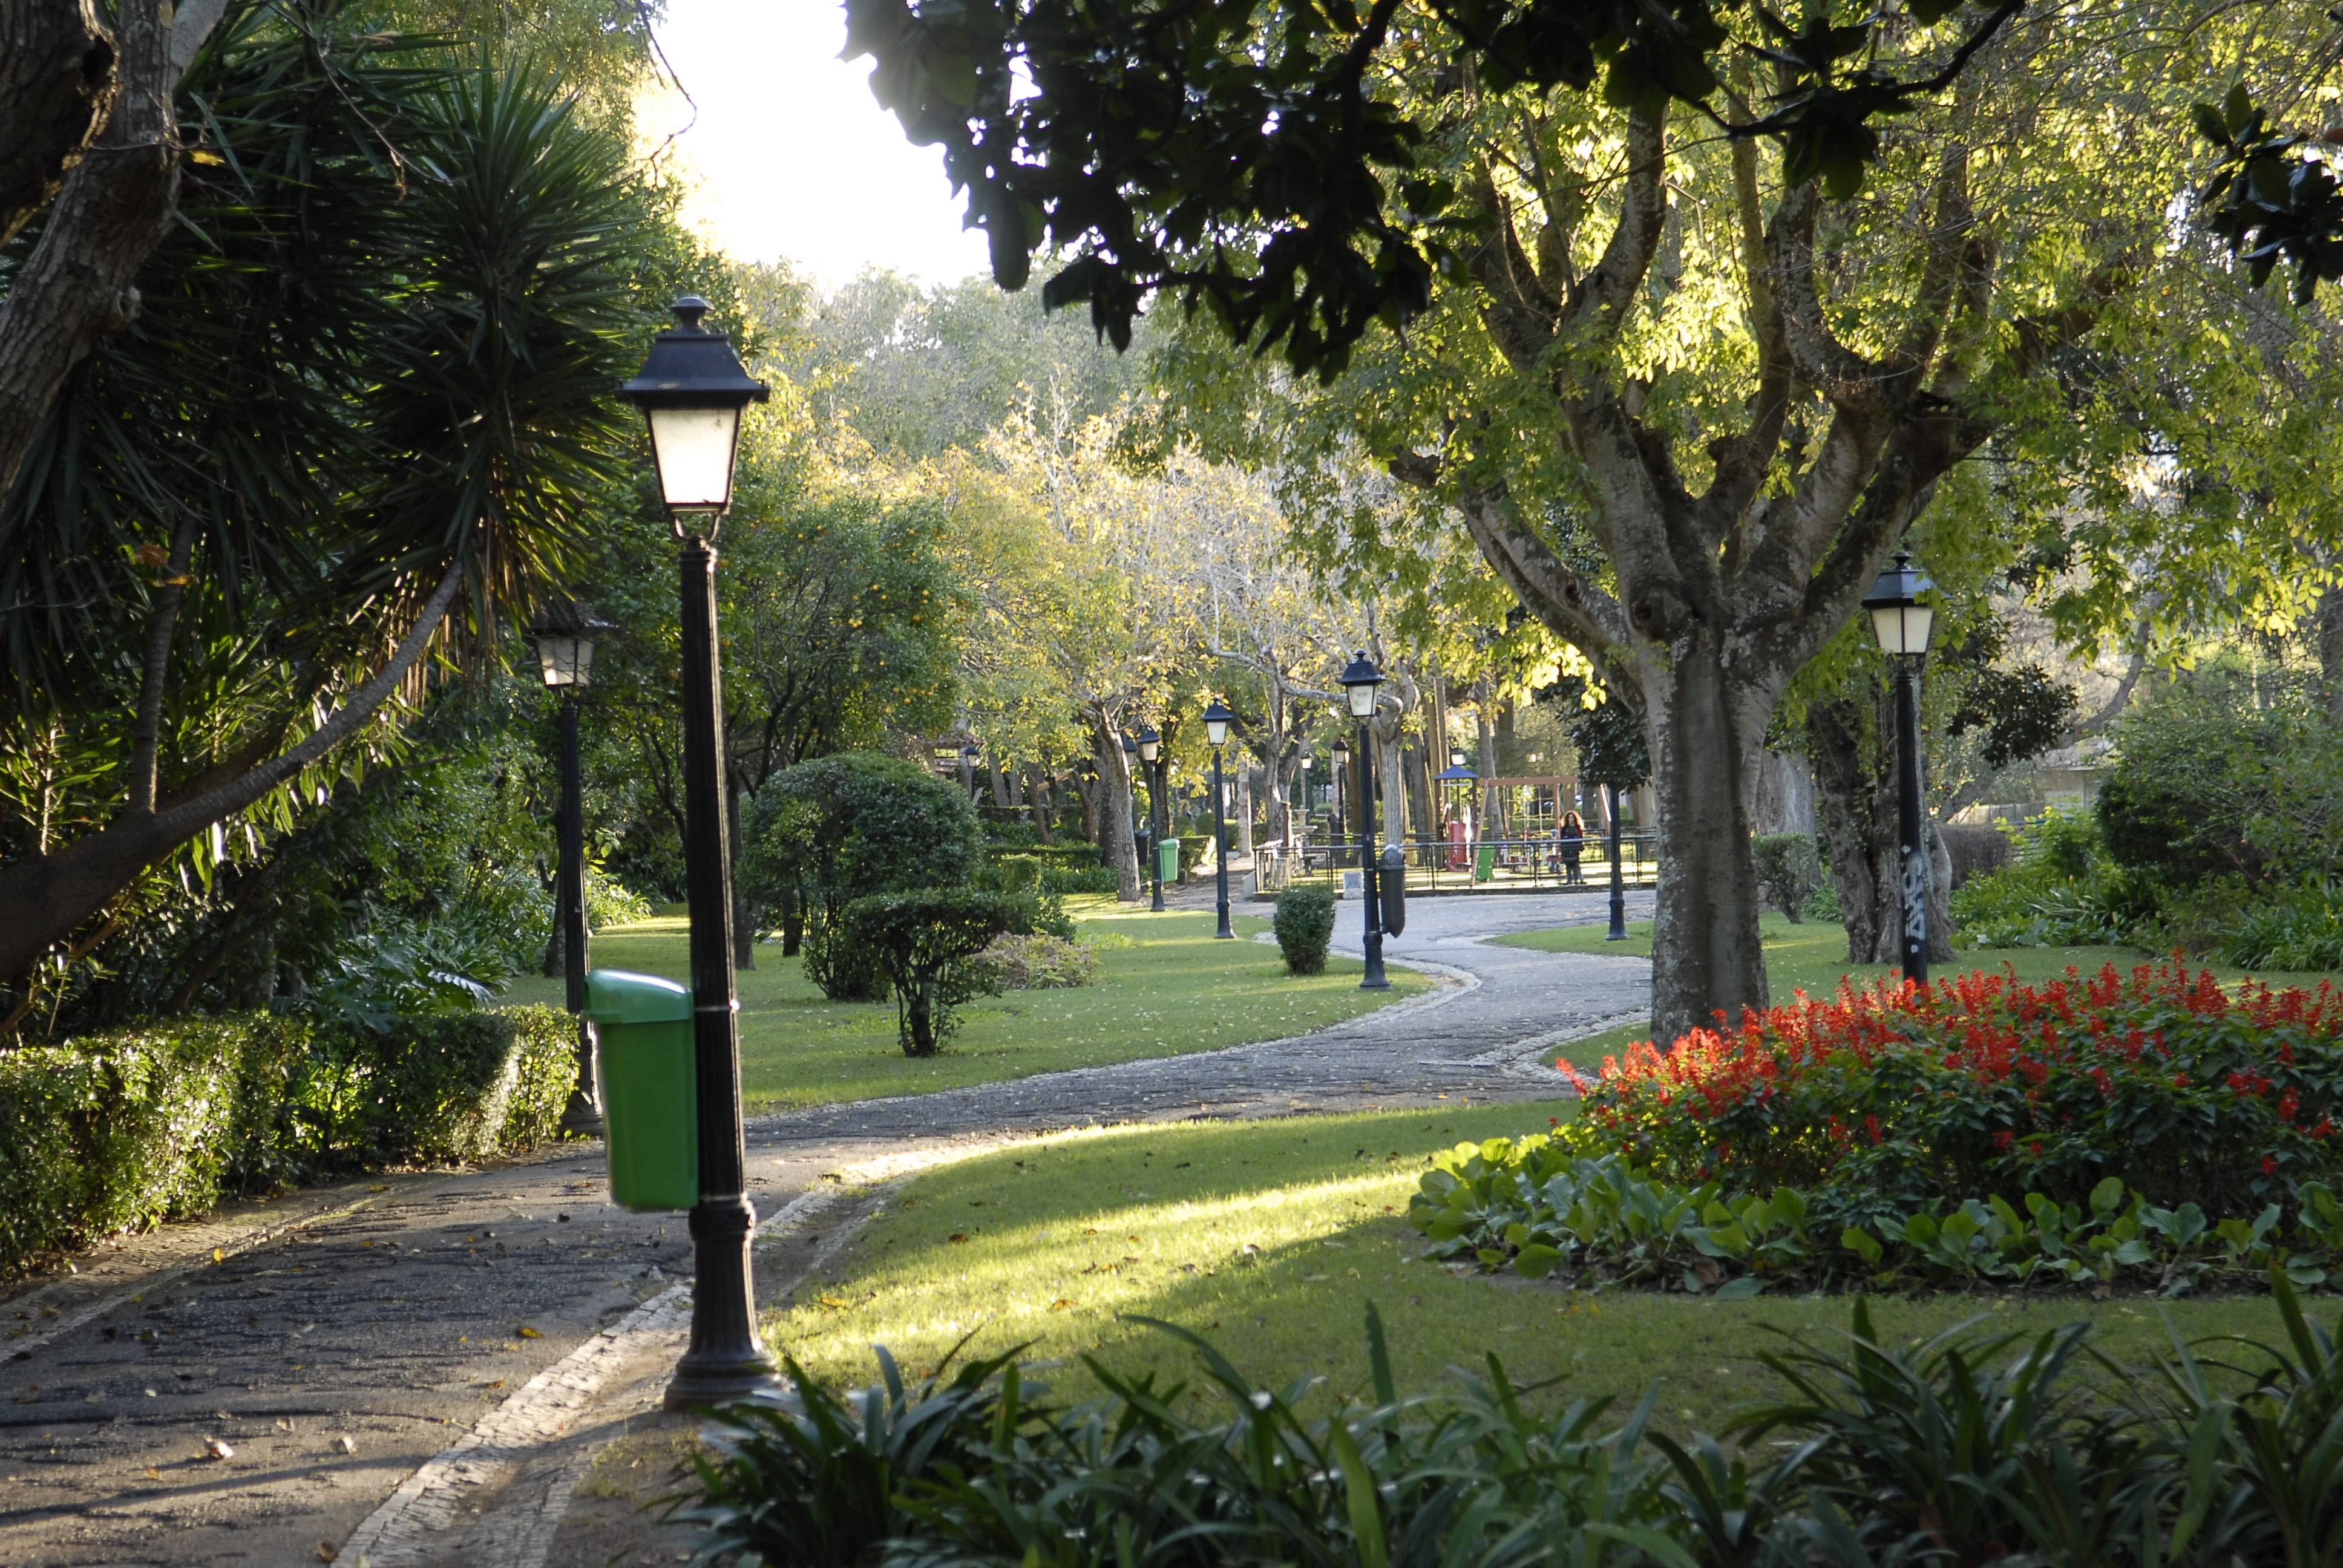 Concurso Público para exploração de quiosque com esplanada no Jardim Municipal de Oeiras